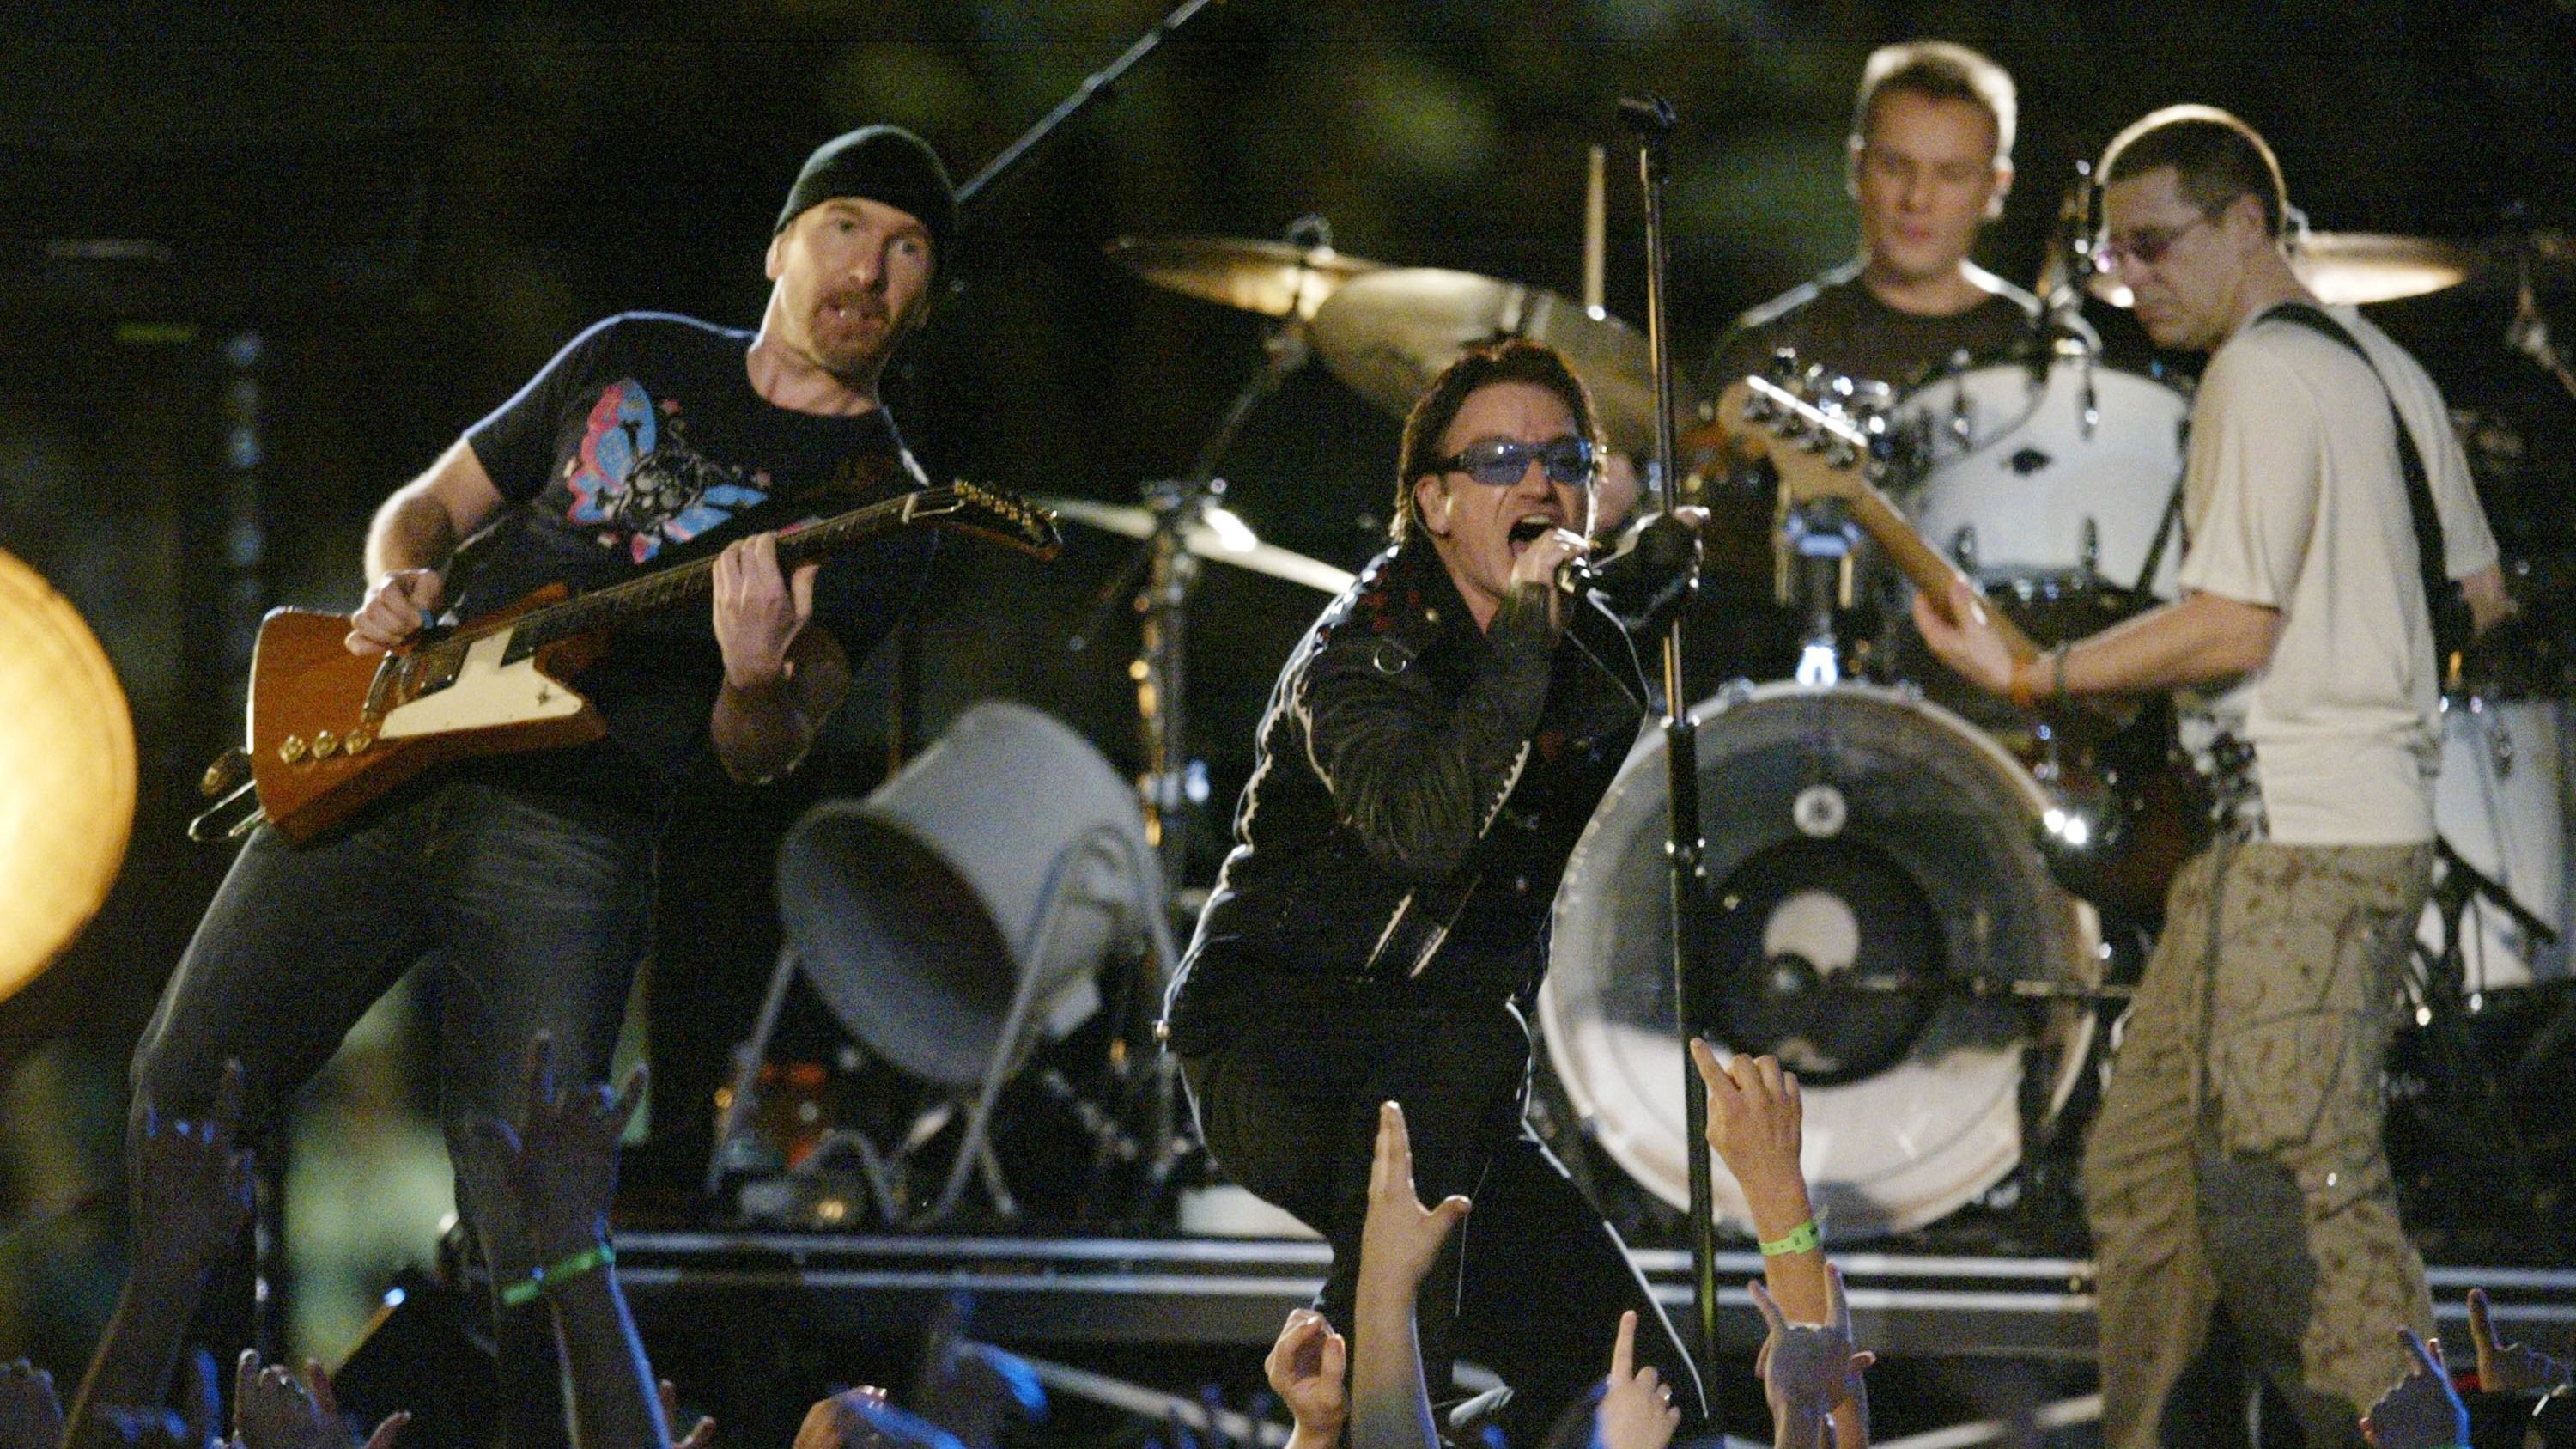 <strong>2002: U2</strong><br>
                Der Super Bowl 2001 war der erste nach den 9/11-Angriffen.&nbsp;Bono und U2 zollten der nationalen Tragödie Tribut und spielten "Where the Streets Have No Name" vor dem Hintergrund der Namen der Opfer vom 11. September. Bono öffnete seine Jacke, um die Stars &amp; Stripes im Inneren zu zeigen, was diese Halbzeitshow zu einer besonders emotionalen Show machte.
